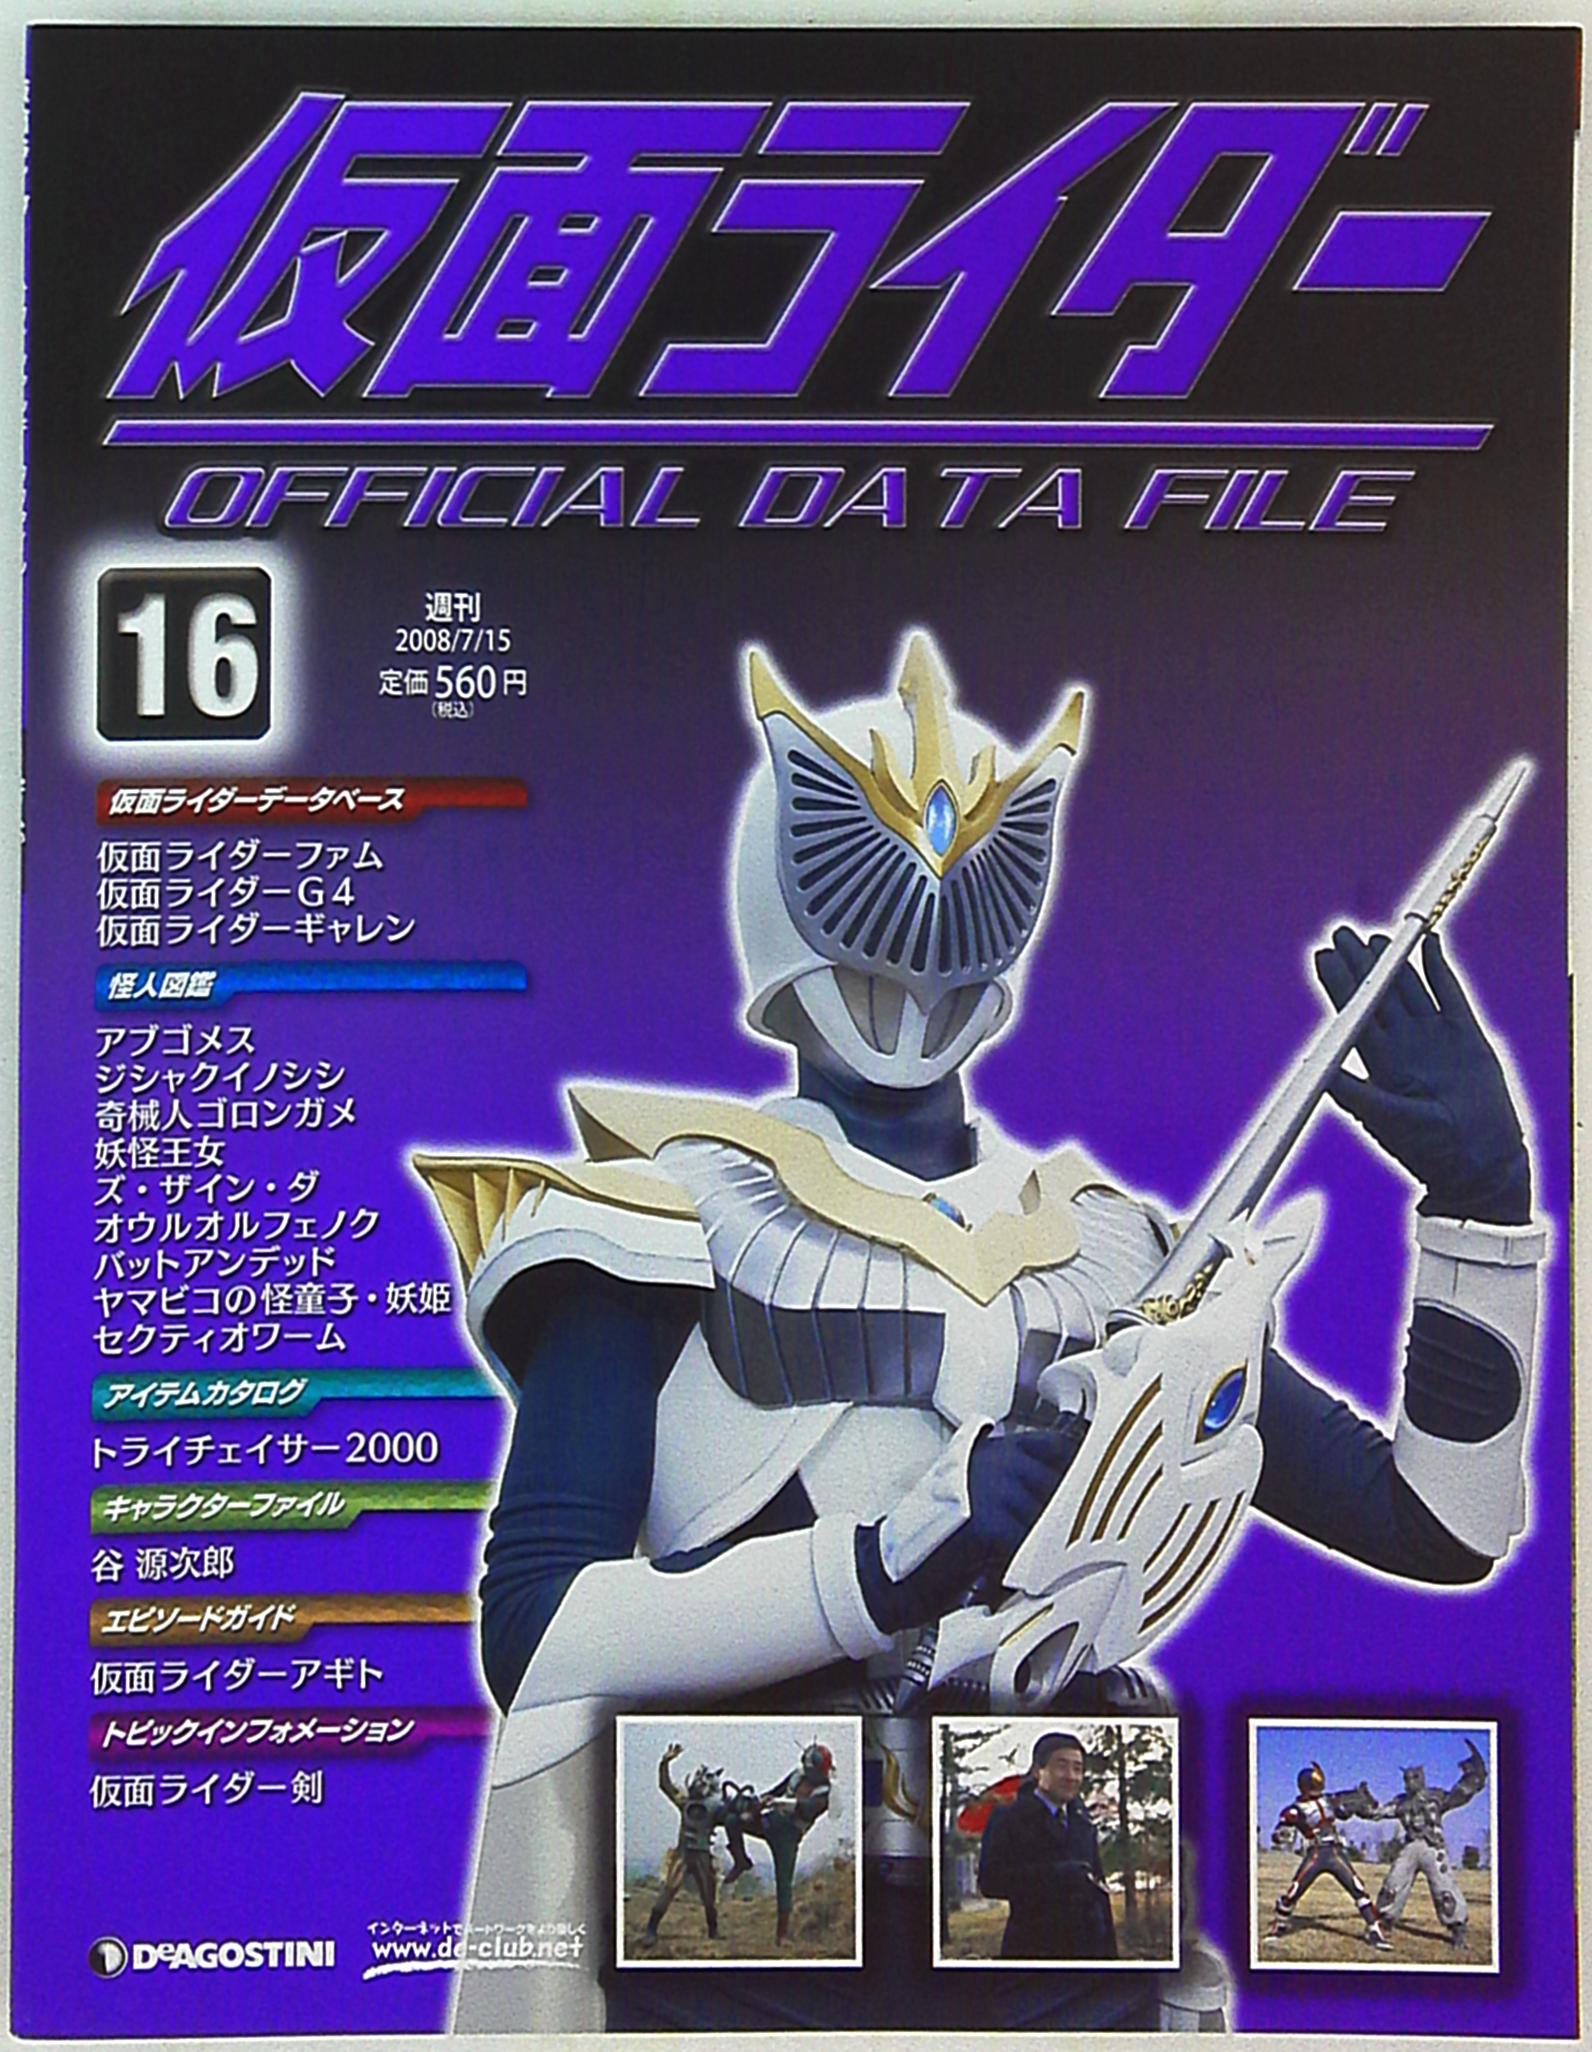 仮面ライダーオフィシャルデータファイル 全125巻+索引号/200207-001 